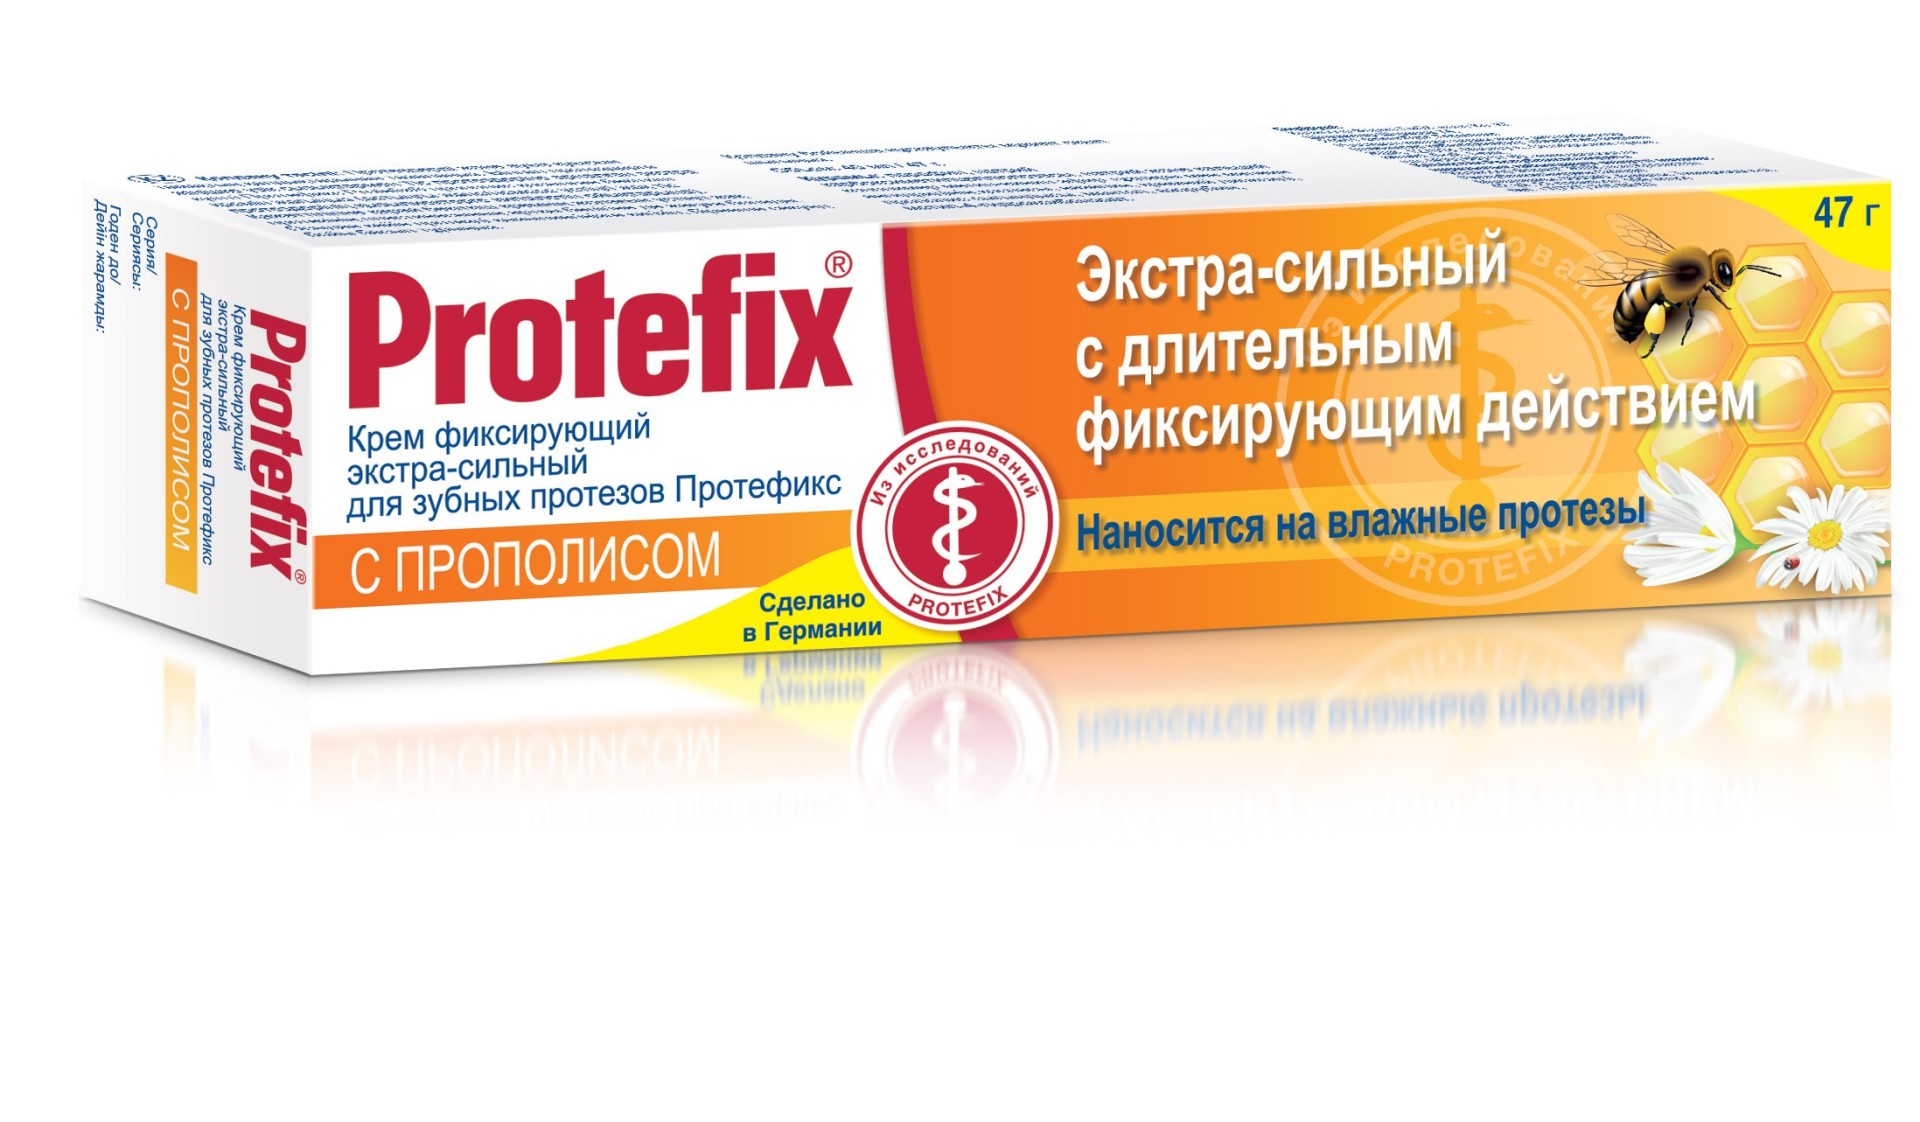 Протефикс крем д/зуб протез Прополис экстра-сильный 40мл